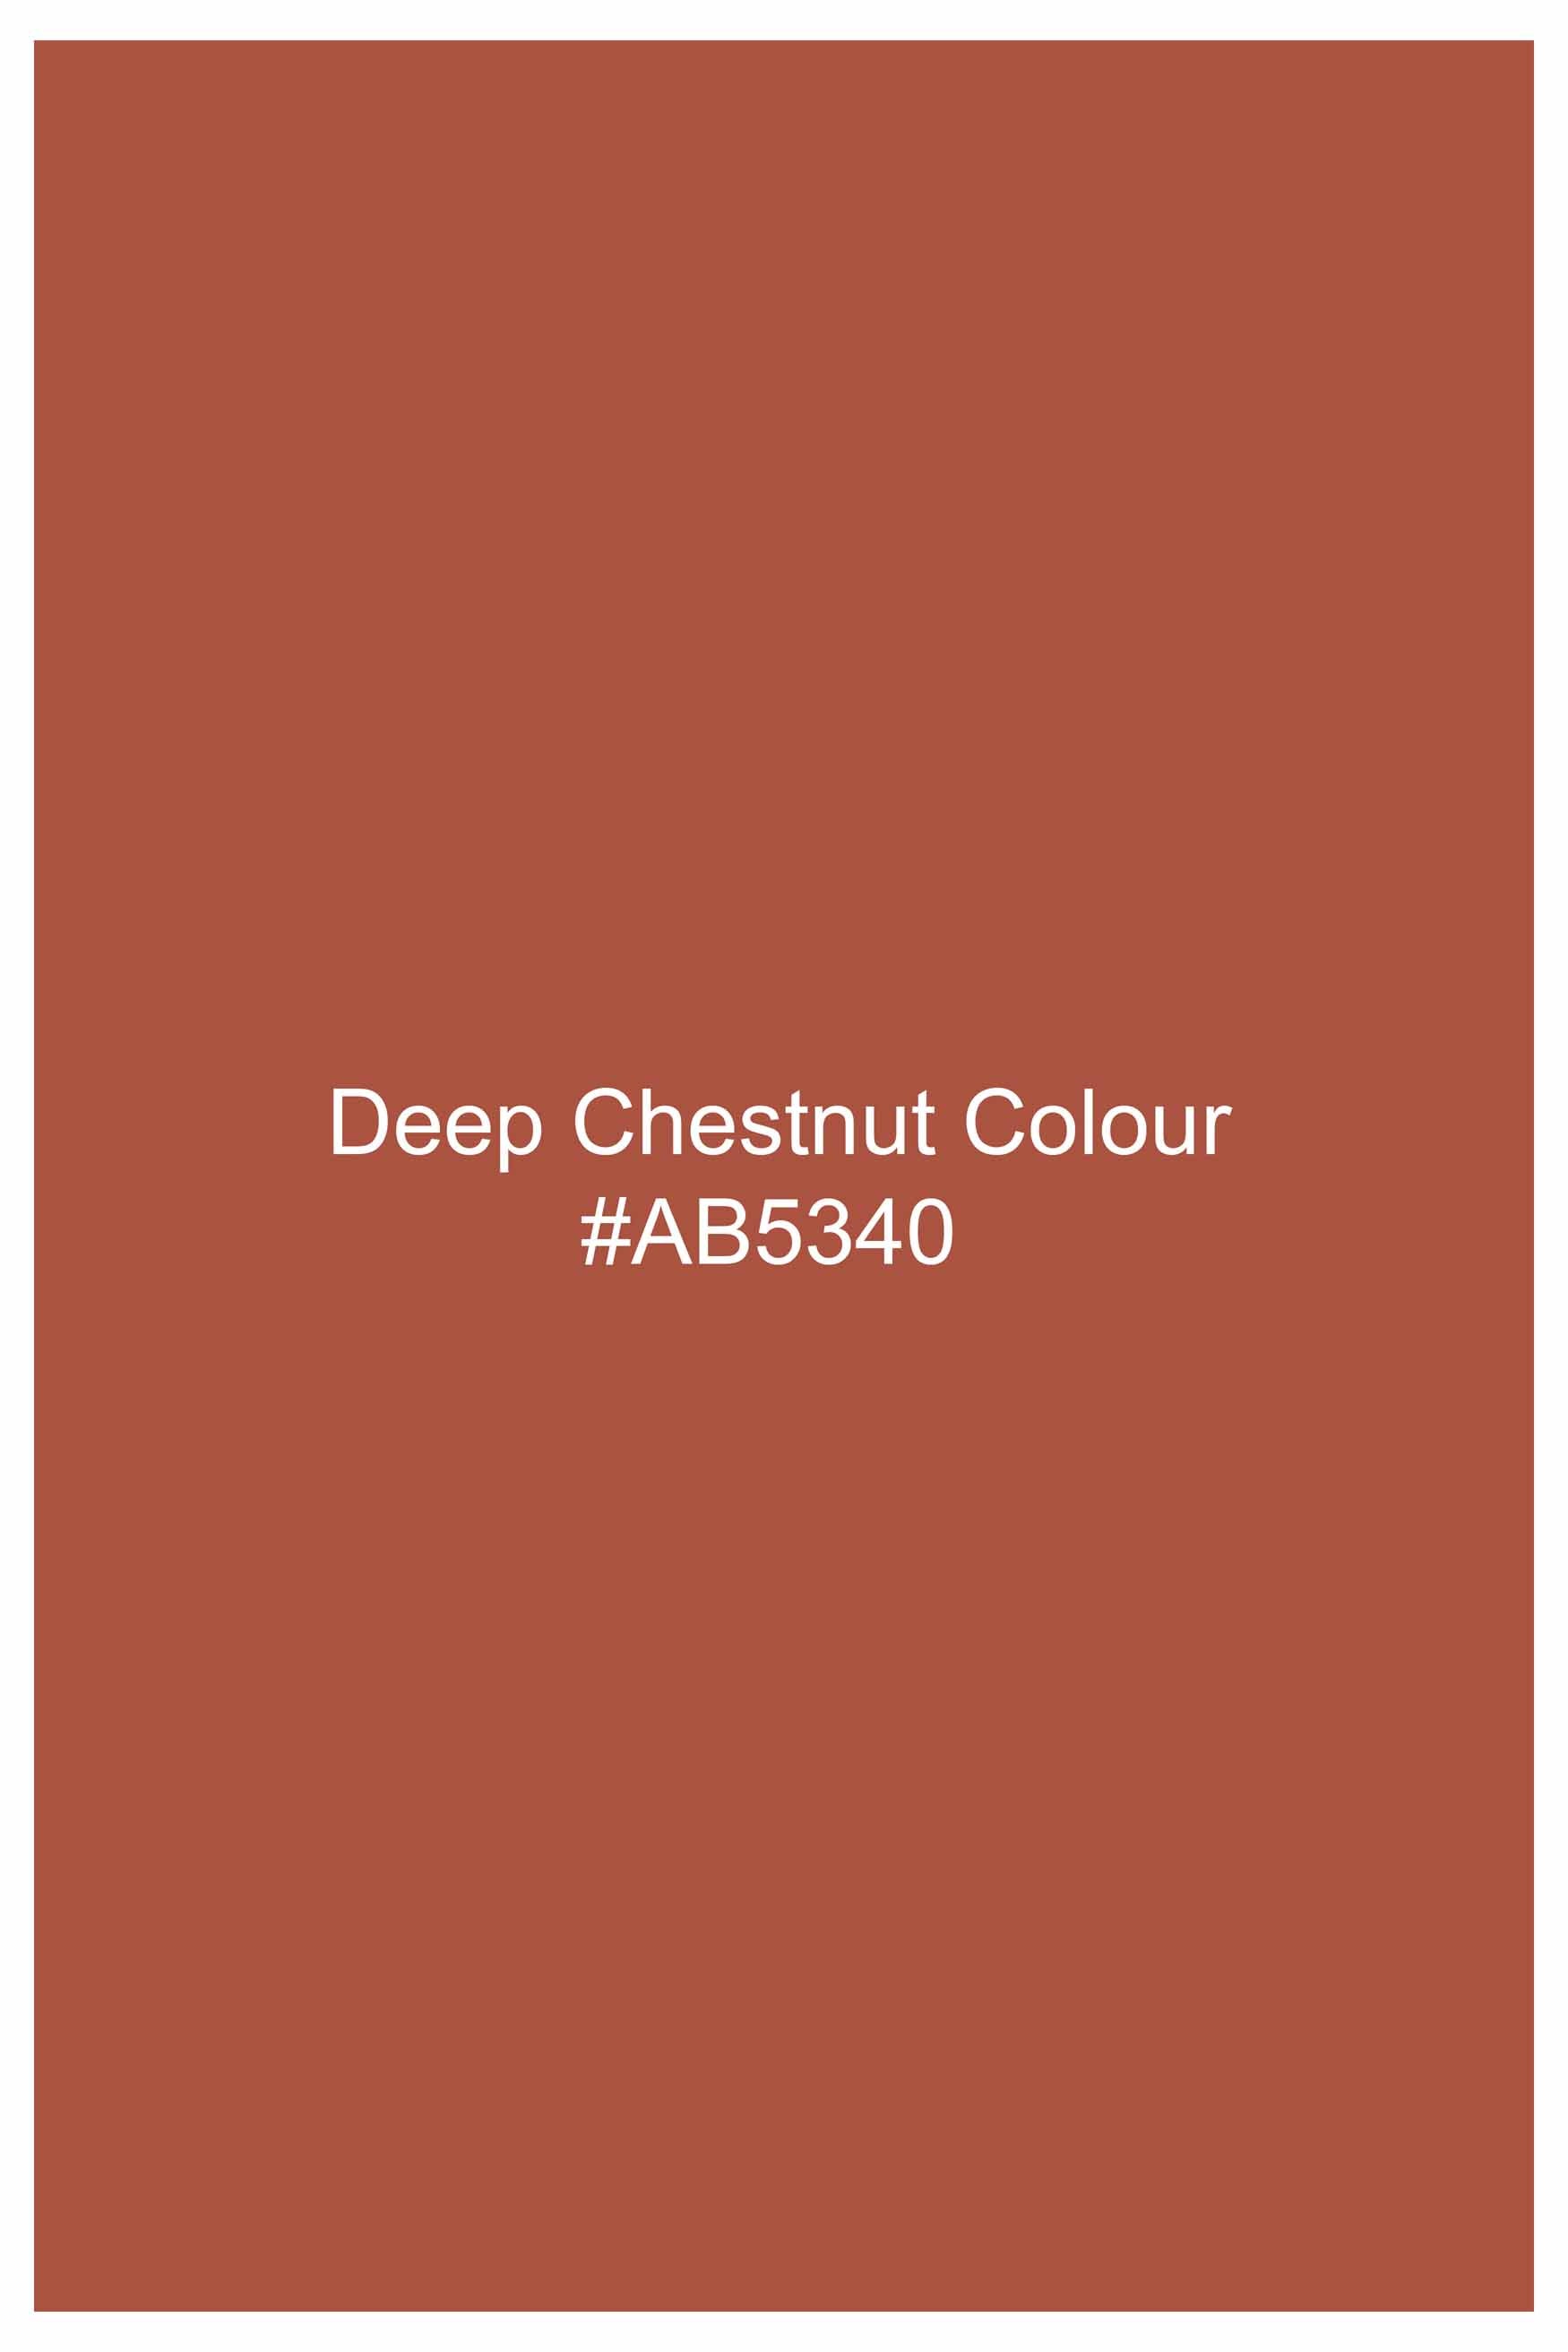 Deep Chestnut Orange Subtle Sheen Super Soft Premium Cotton Shirt 10995-BLK-38, 10995-BLK-H-38, 10995-BLK-39, 10995-BLK-H-39, 10995-BLK-40, 10995-BLK-H-40, 10995-BLK-42, 10995-BLK-H-42, 10995-BLK-44, 10995-BLK-H-44, 10995-BLK-46, 10995-BLK-H-46, 10995-BLK-48, 10995-BLK-H-48, 10995-BLK-50, 10995-BLK-H-50, 10995-BLK-52, 10995-BLK-H-52 